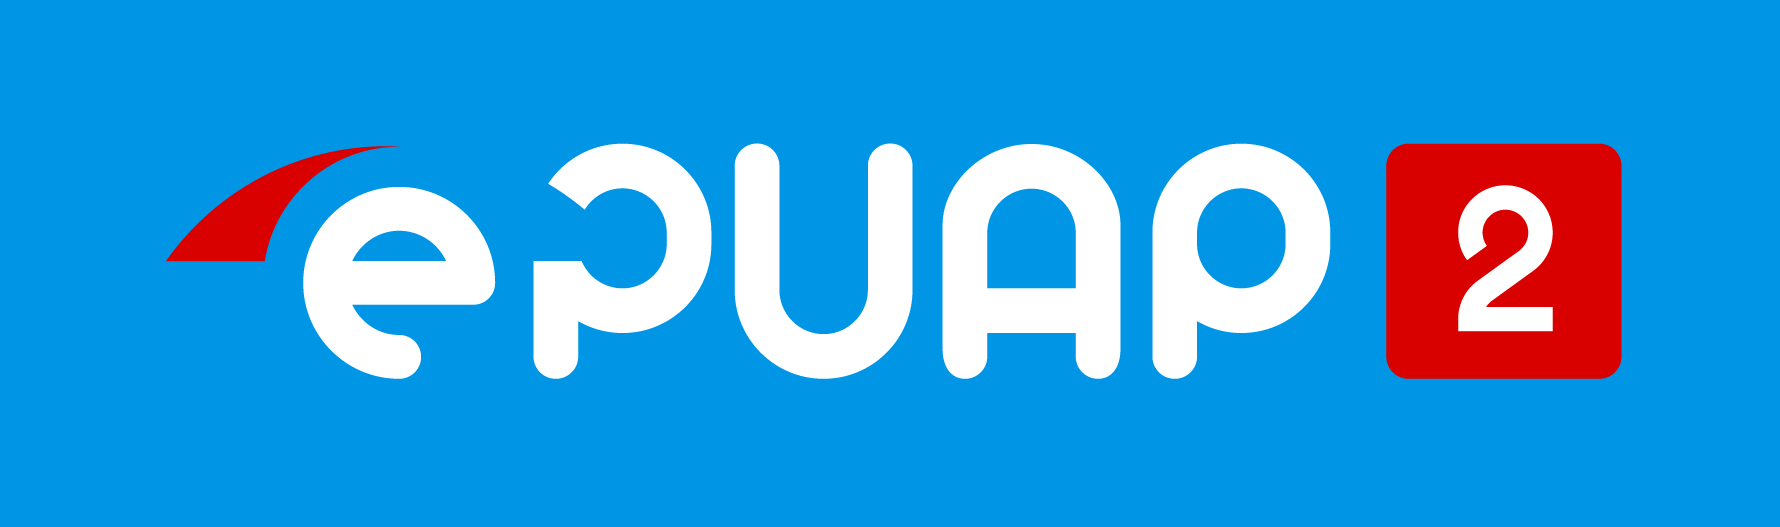 ePUAP2 logo kontra apla uproszcz